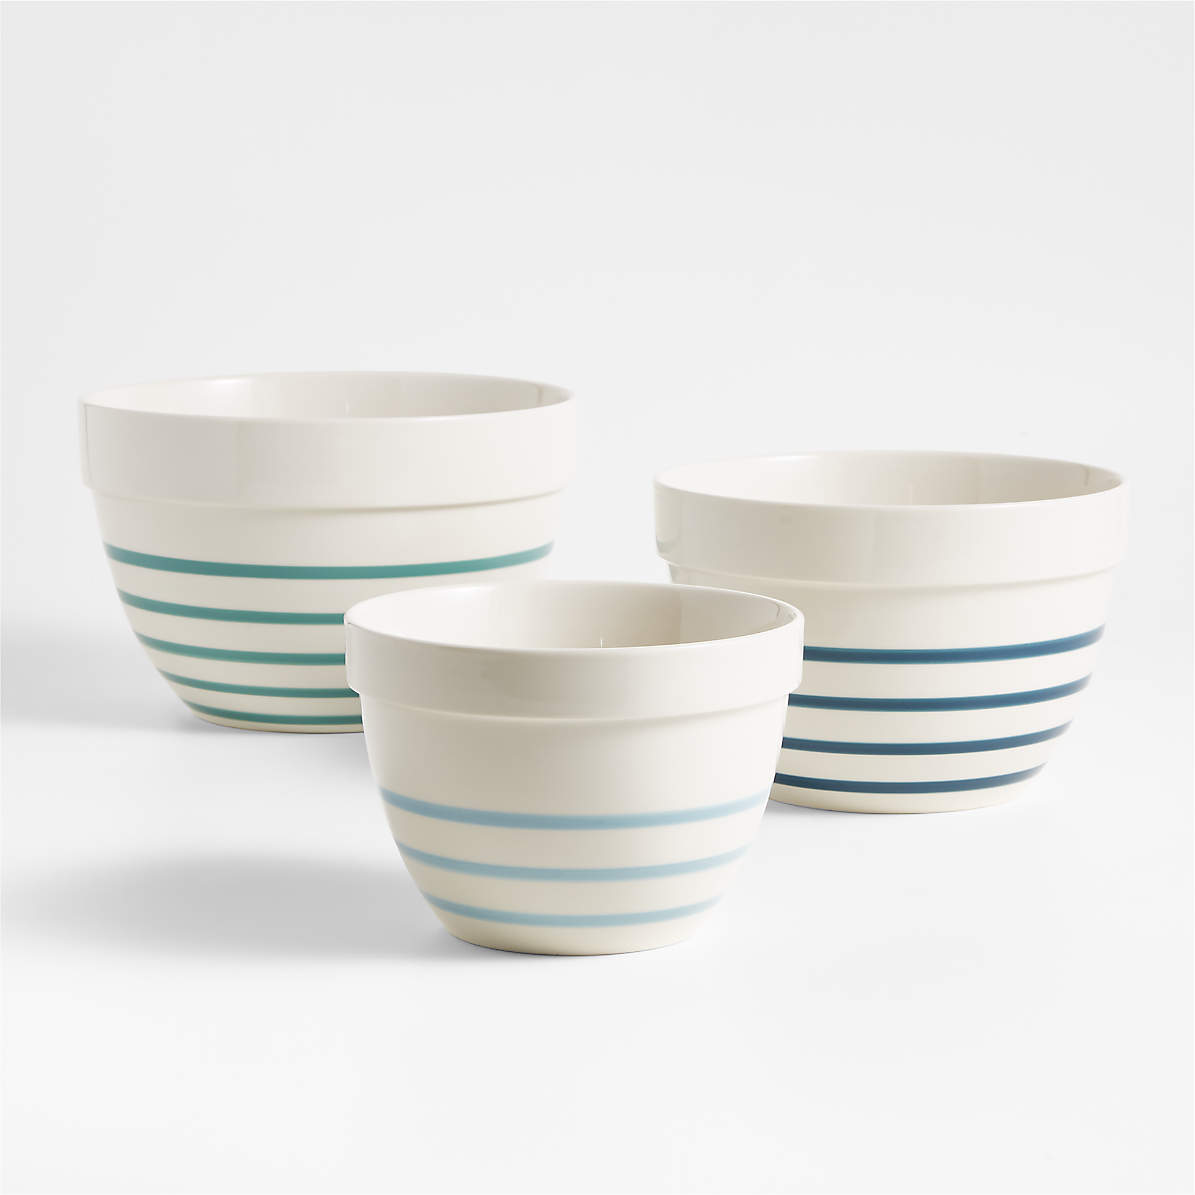 COOK WITH COLOR Plastic Prep Bowls - Mini Bowls with Lids, 8 Piece Nesting  Bowls Set includes 4 Prep Bowls and 4 Lids (Ombre Blue)